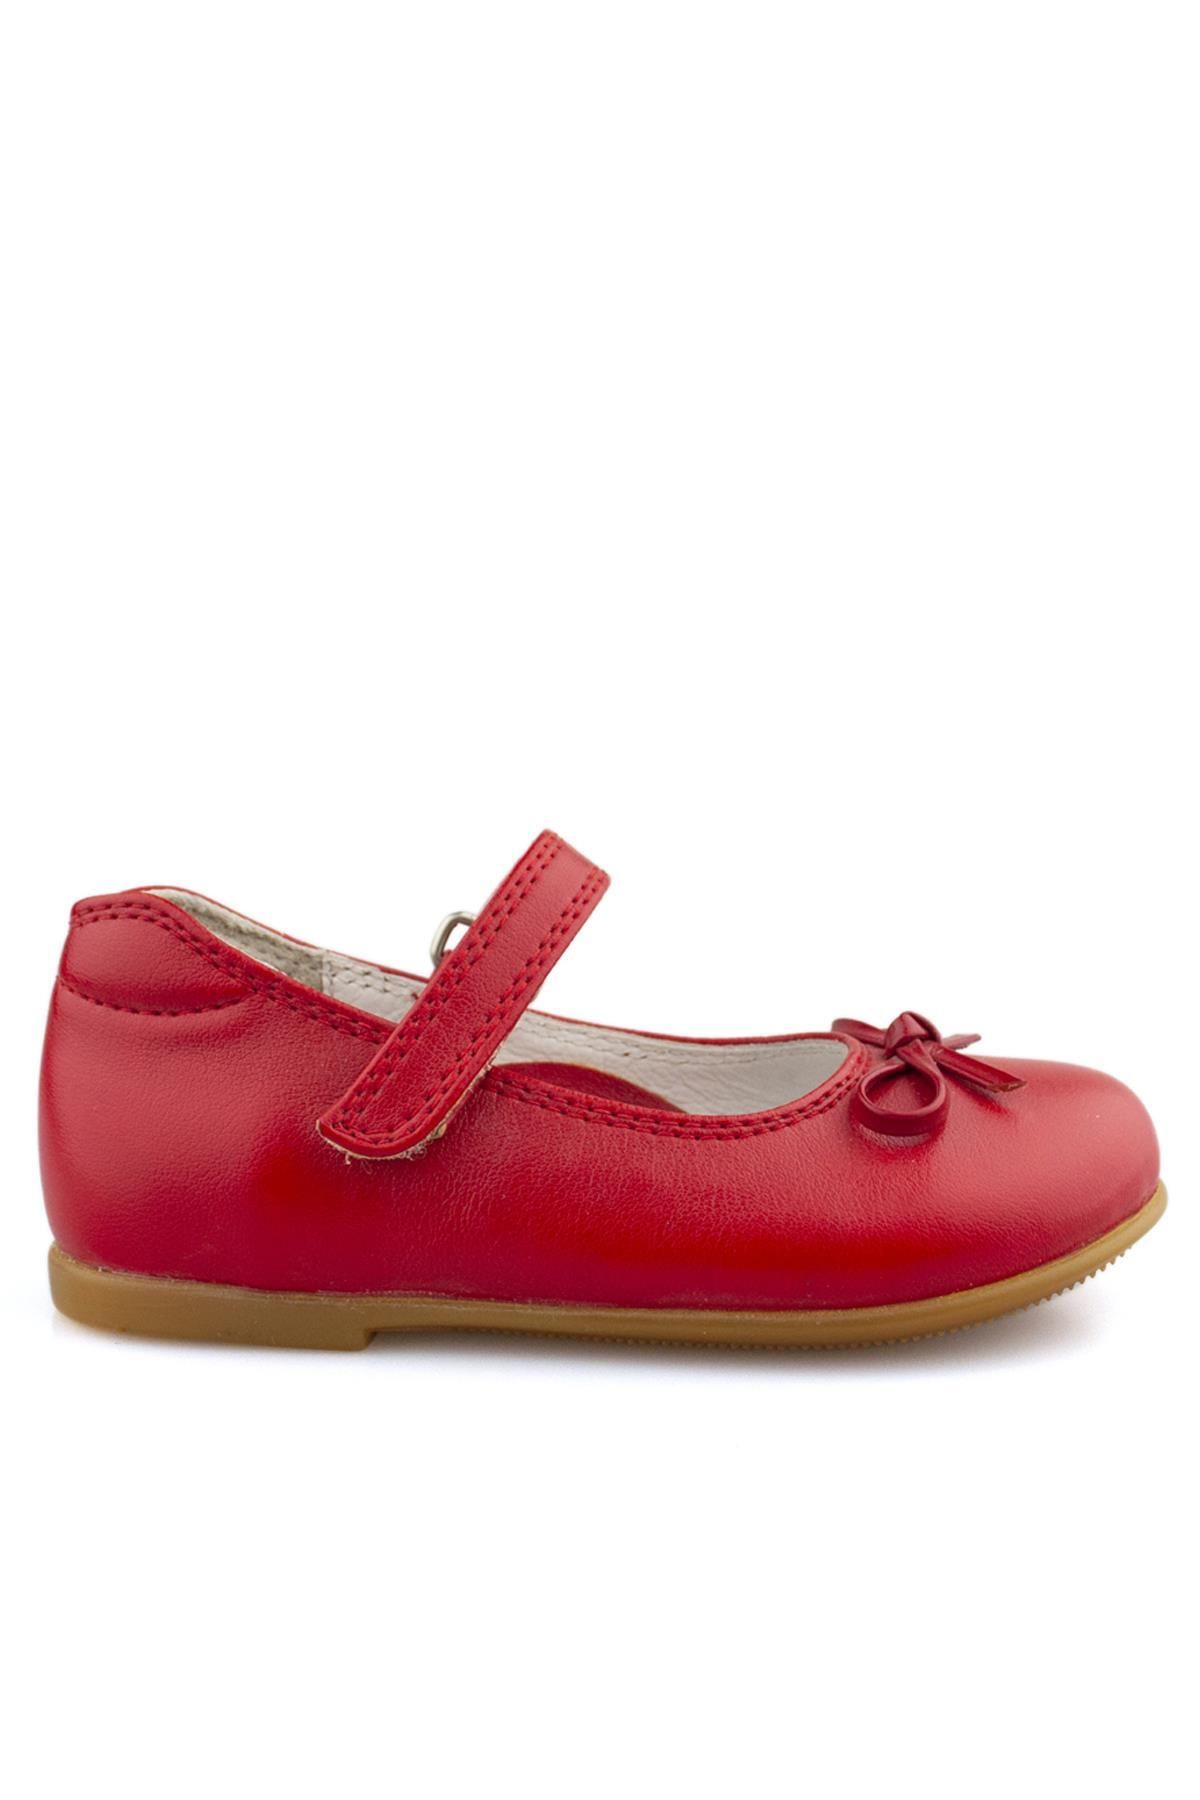 Cici Bebe Ayakkabı Kırmızı Mat Kız Çocuk Babet